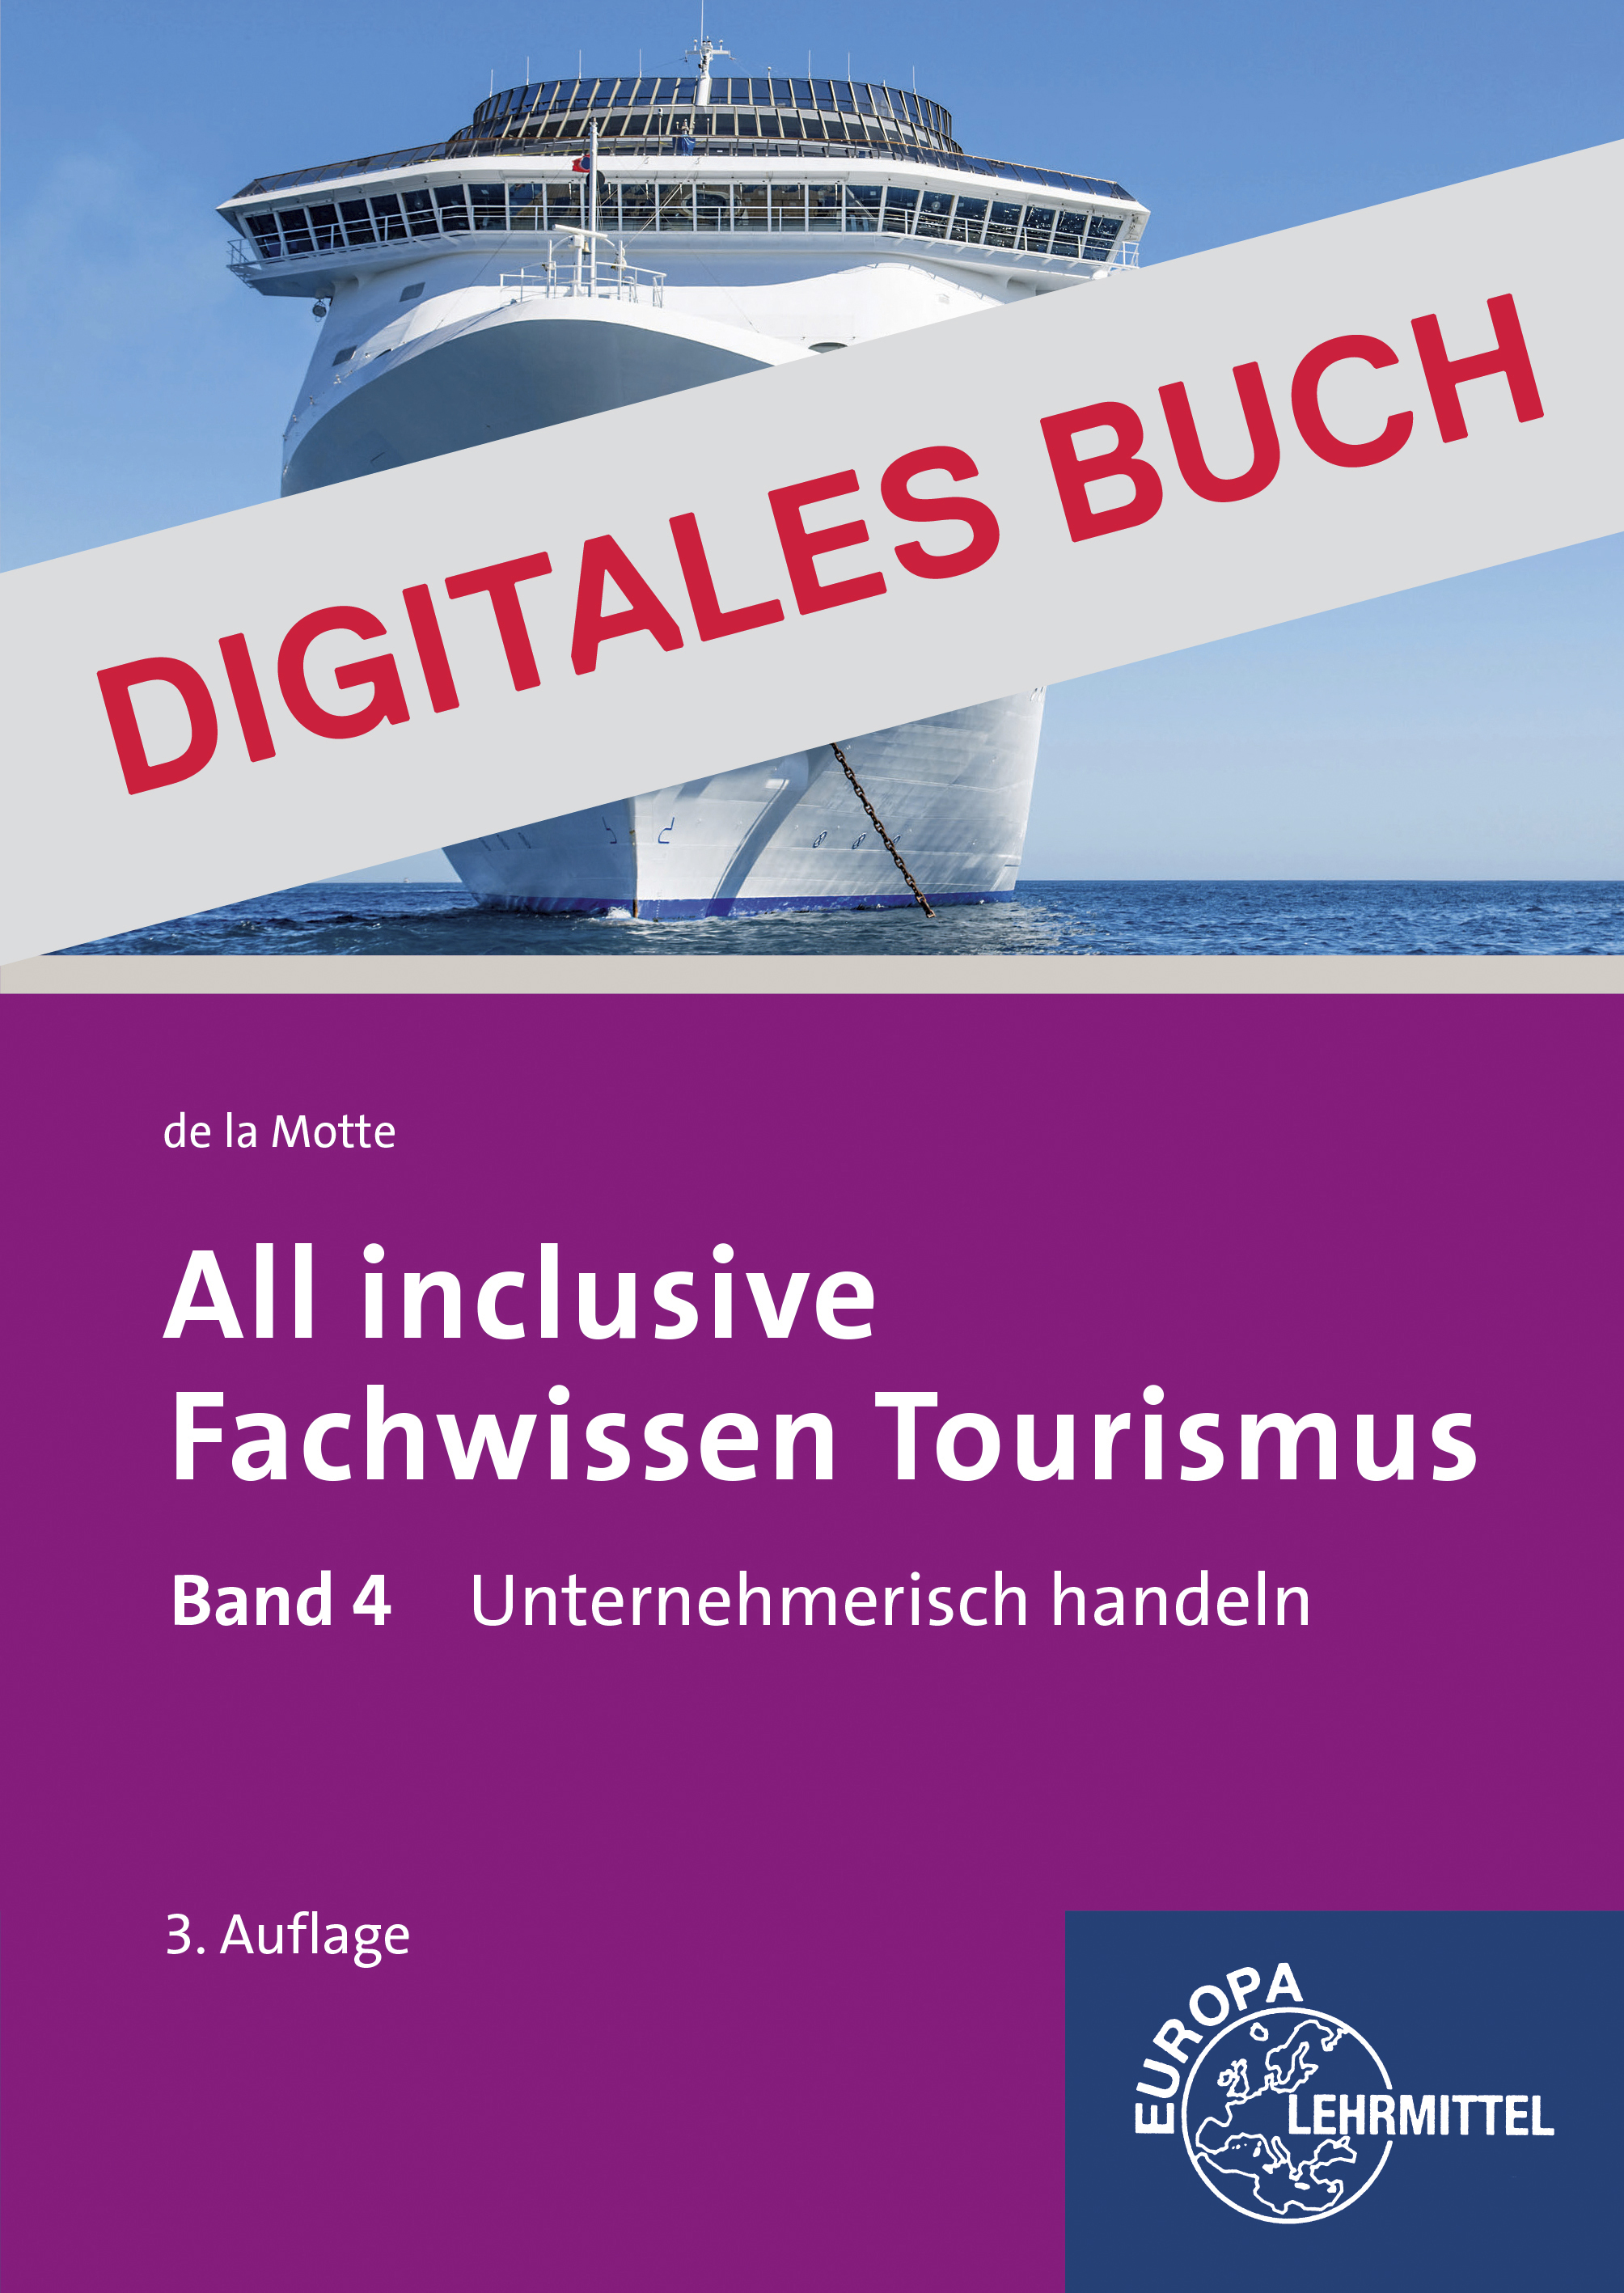 All inclusive - Fachwissen Tourismus Band 4 - Digitales Buch